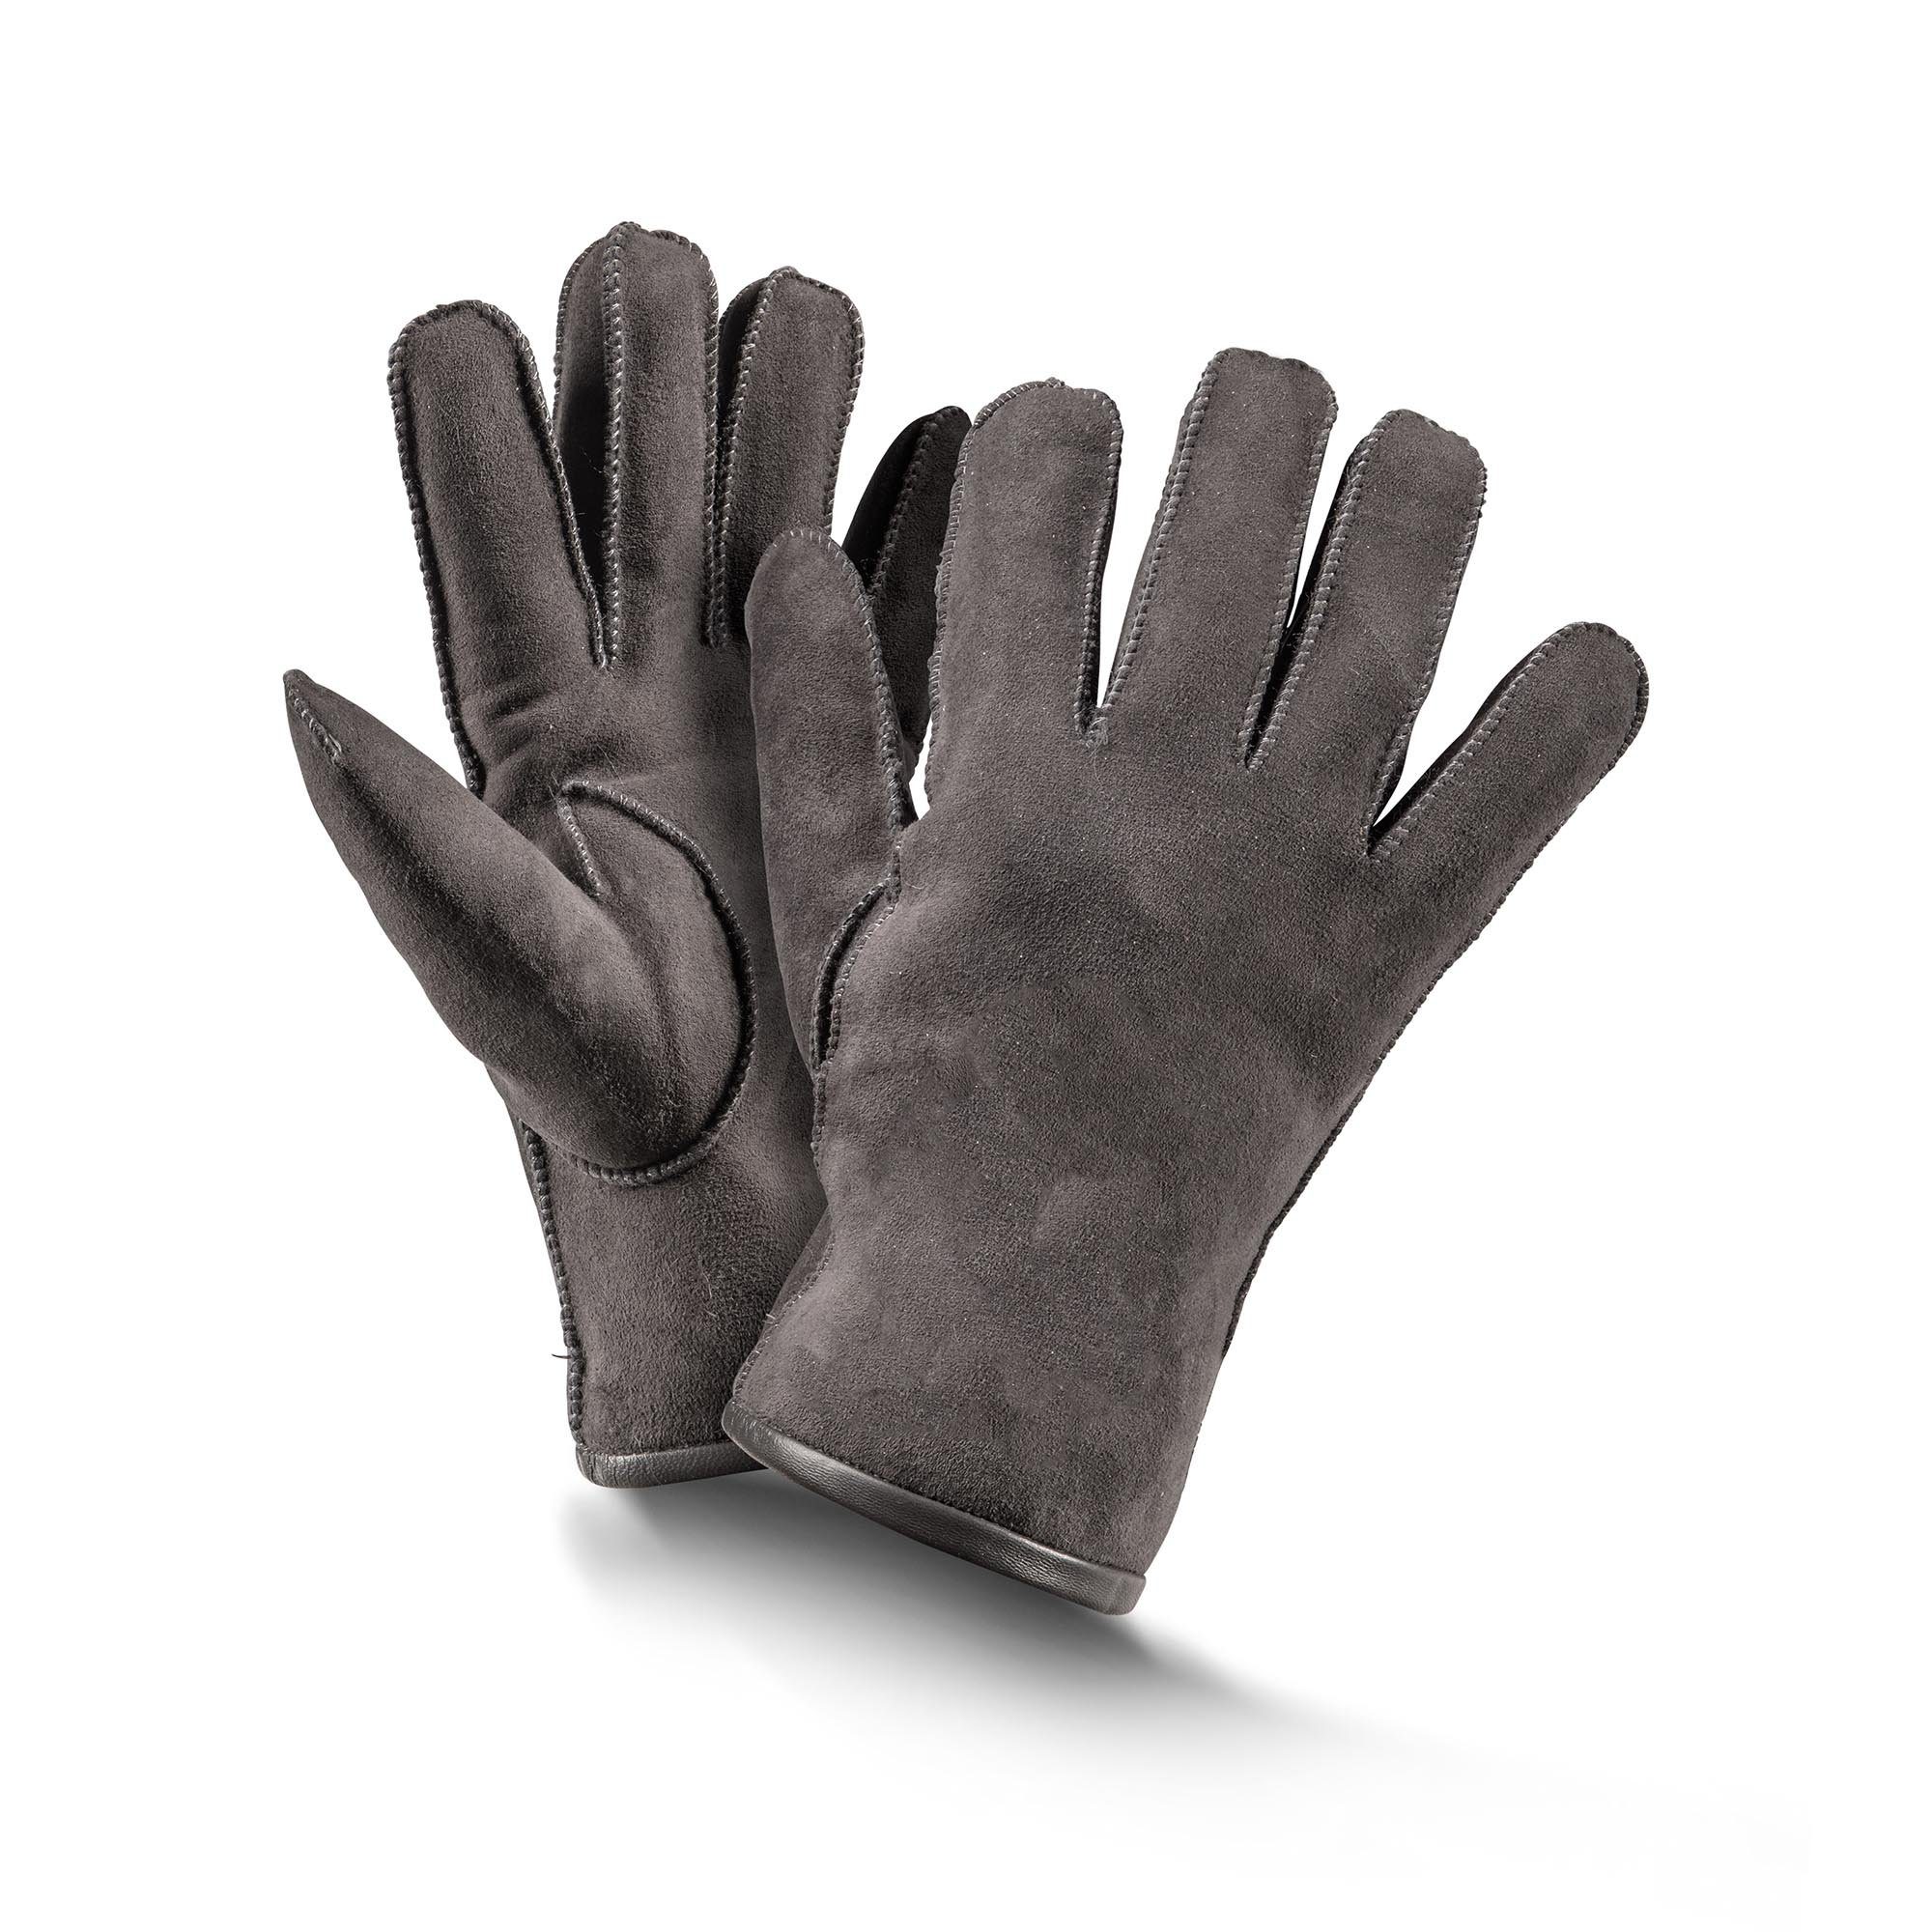 Baumwollhandschuhe Basic schwarz/ braun/ Fellhof Fingerhandschuhe Gr grau Handschuhe 6-10